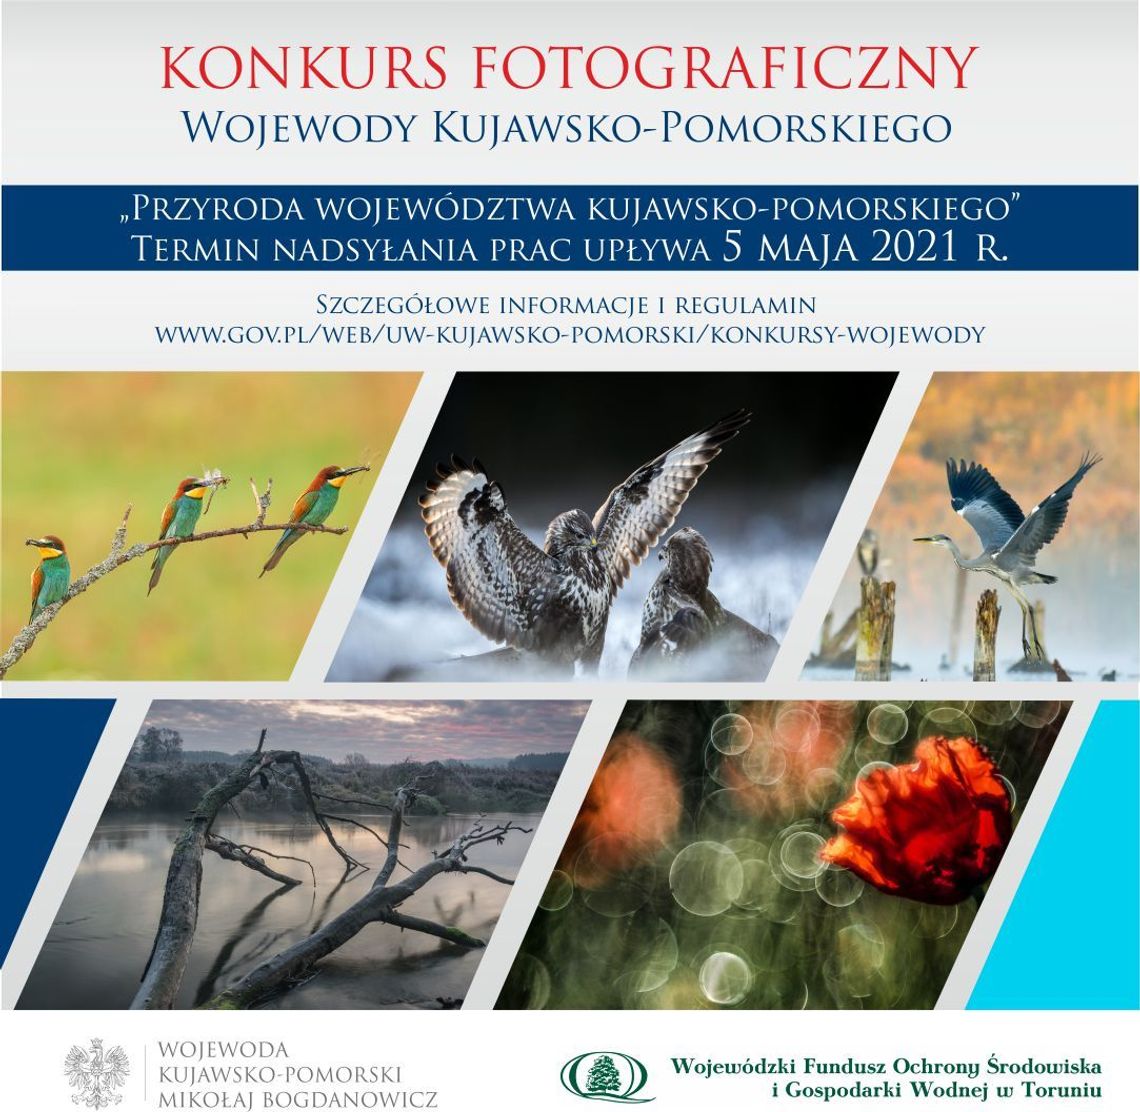 Konkurs fotograficzny "Przyroda województwa kujawsko-pomorskiego" 